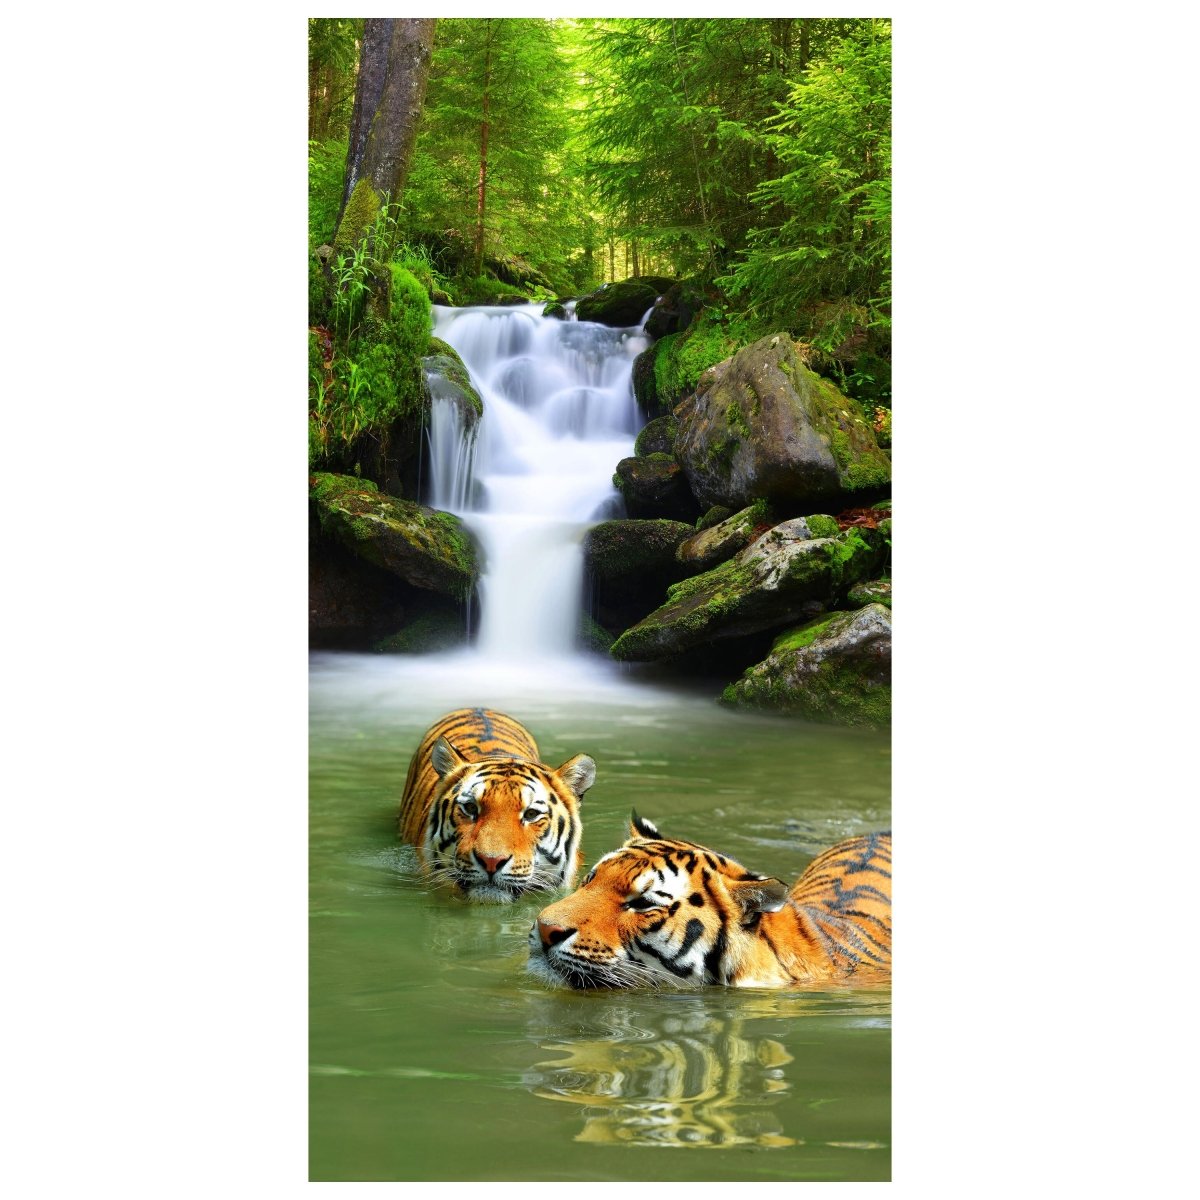 Türtapete badende Tiger, Wasserfall, Dschungel M1338 - Bild 2